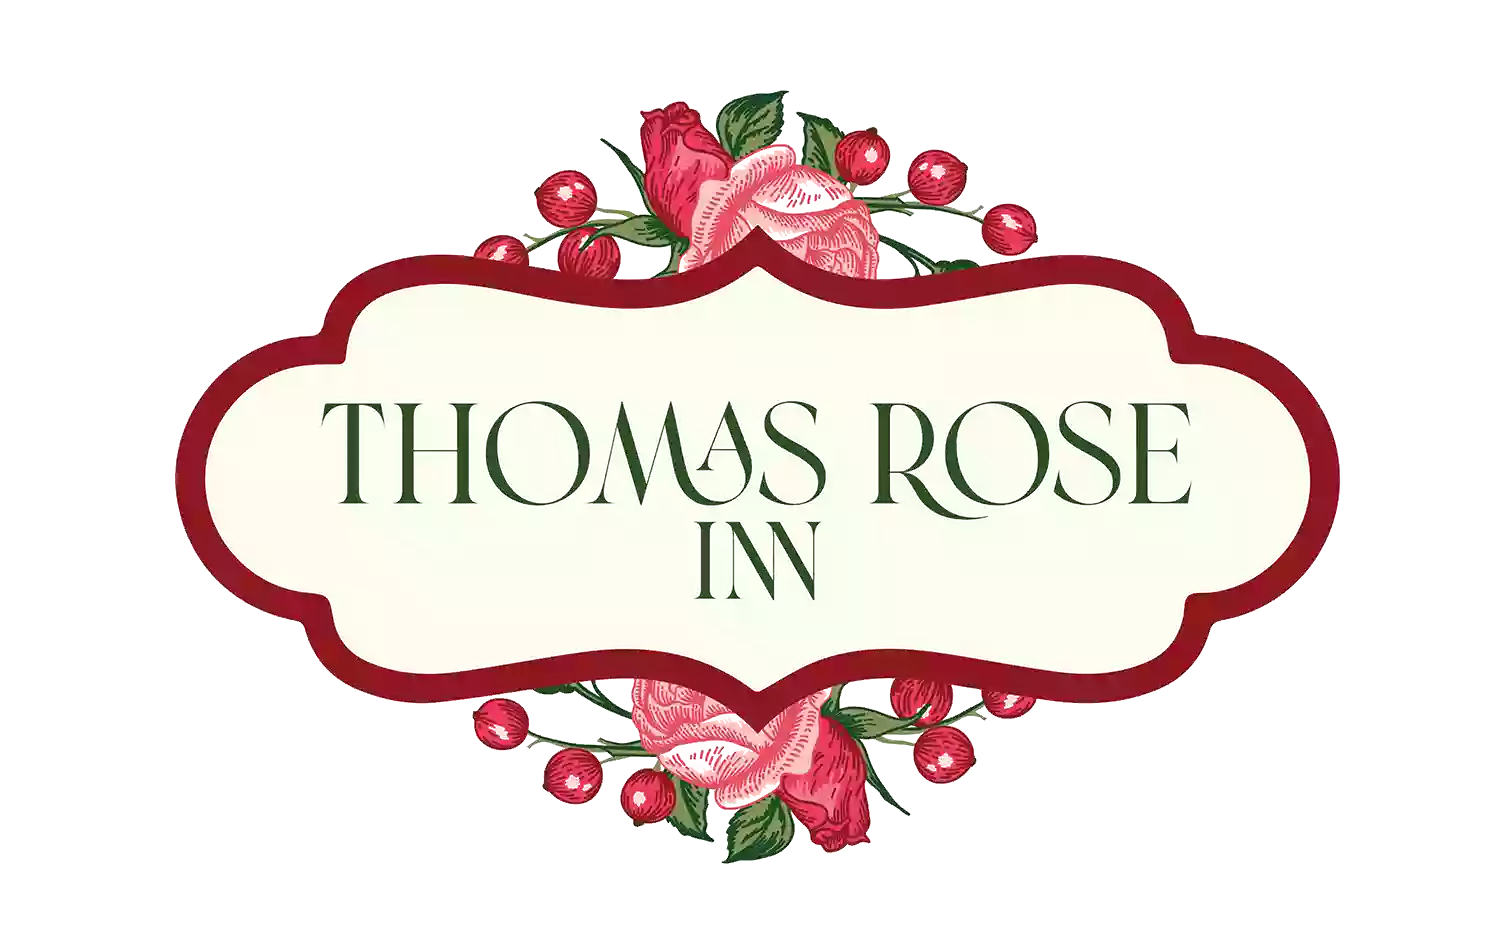 Thomas Rose Inn